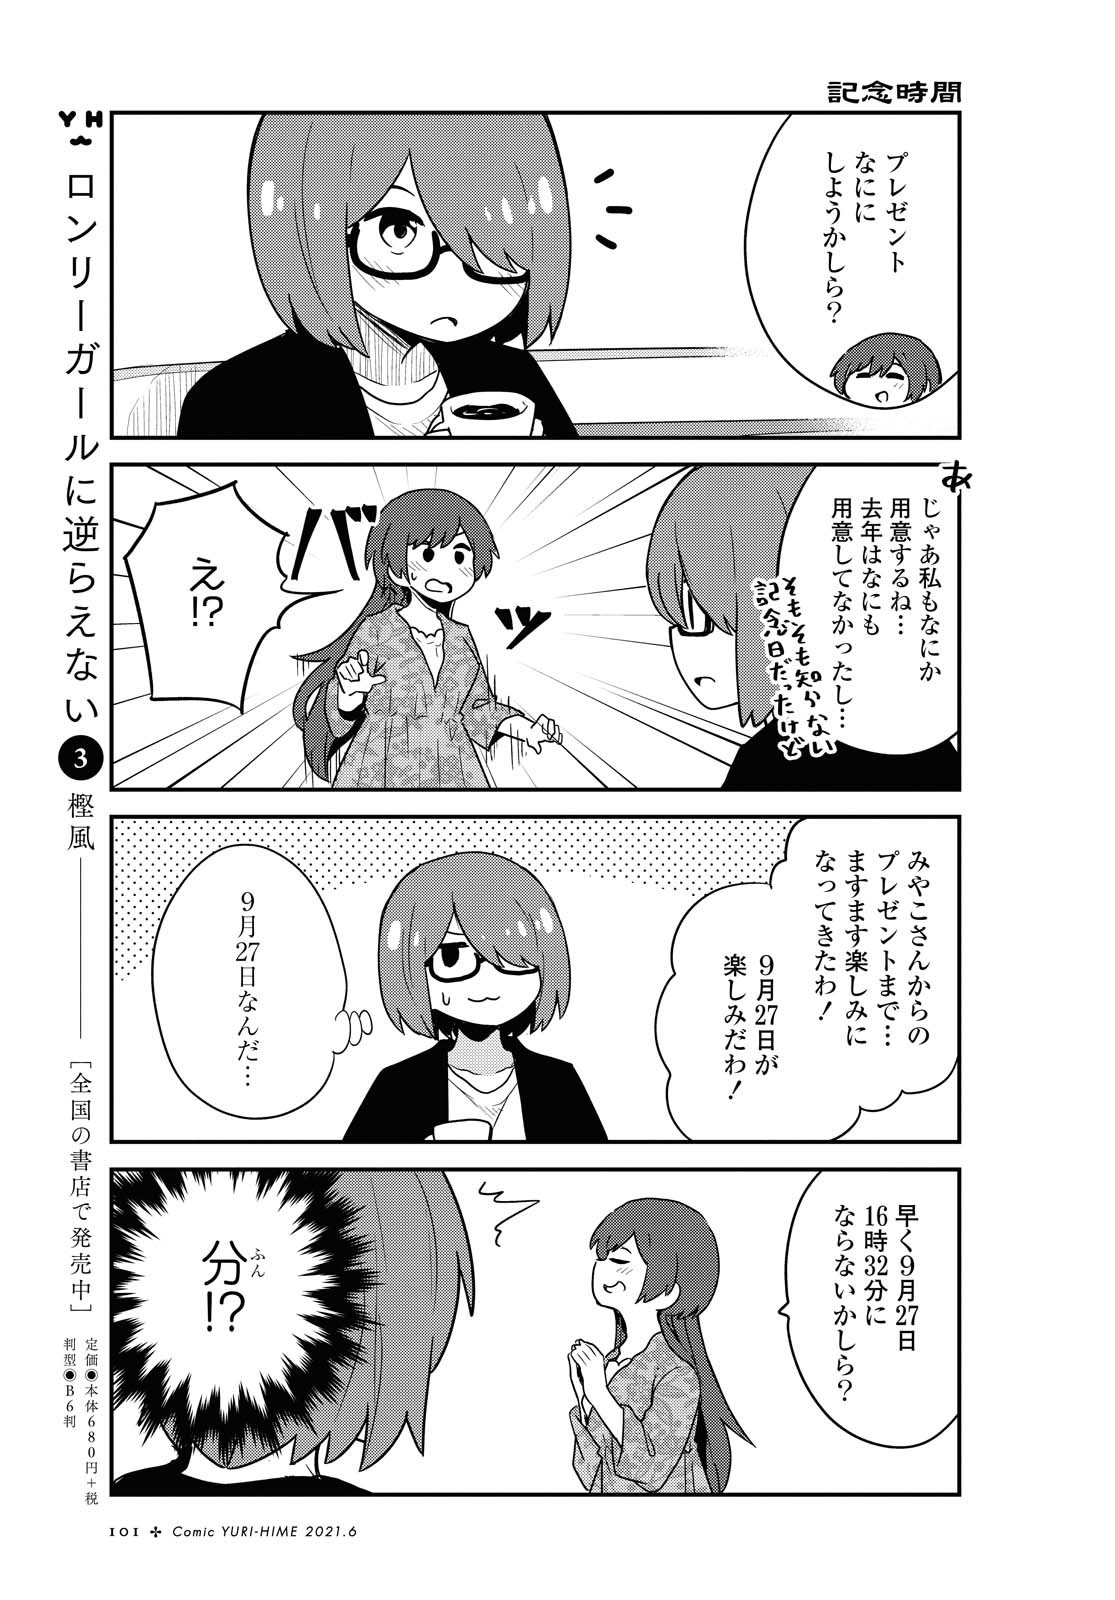 Watashi ni Tenshi ga Maiorita! - Chapter 82 - Page 13